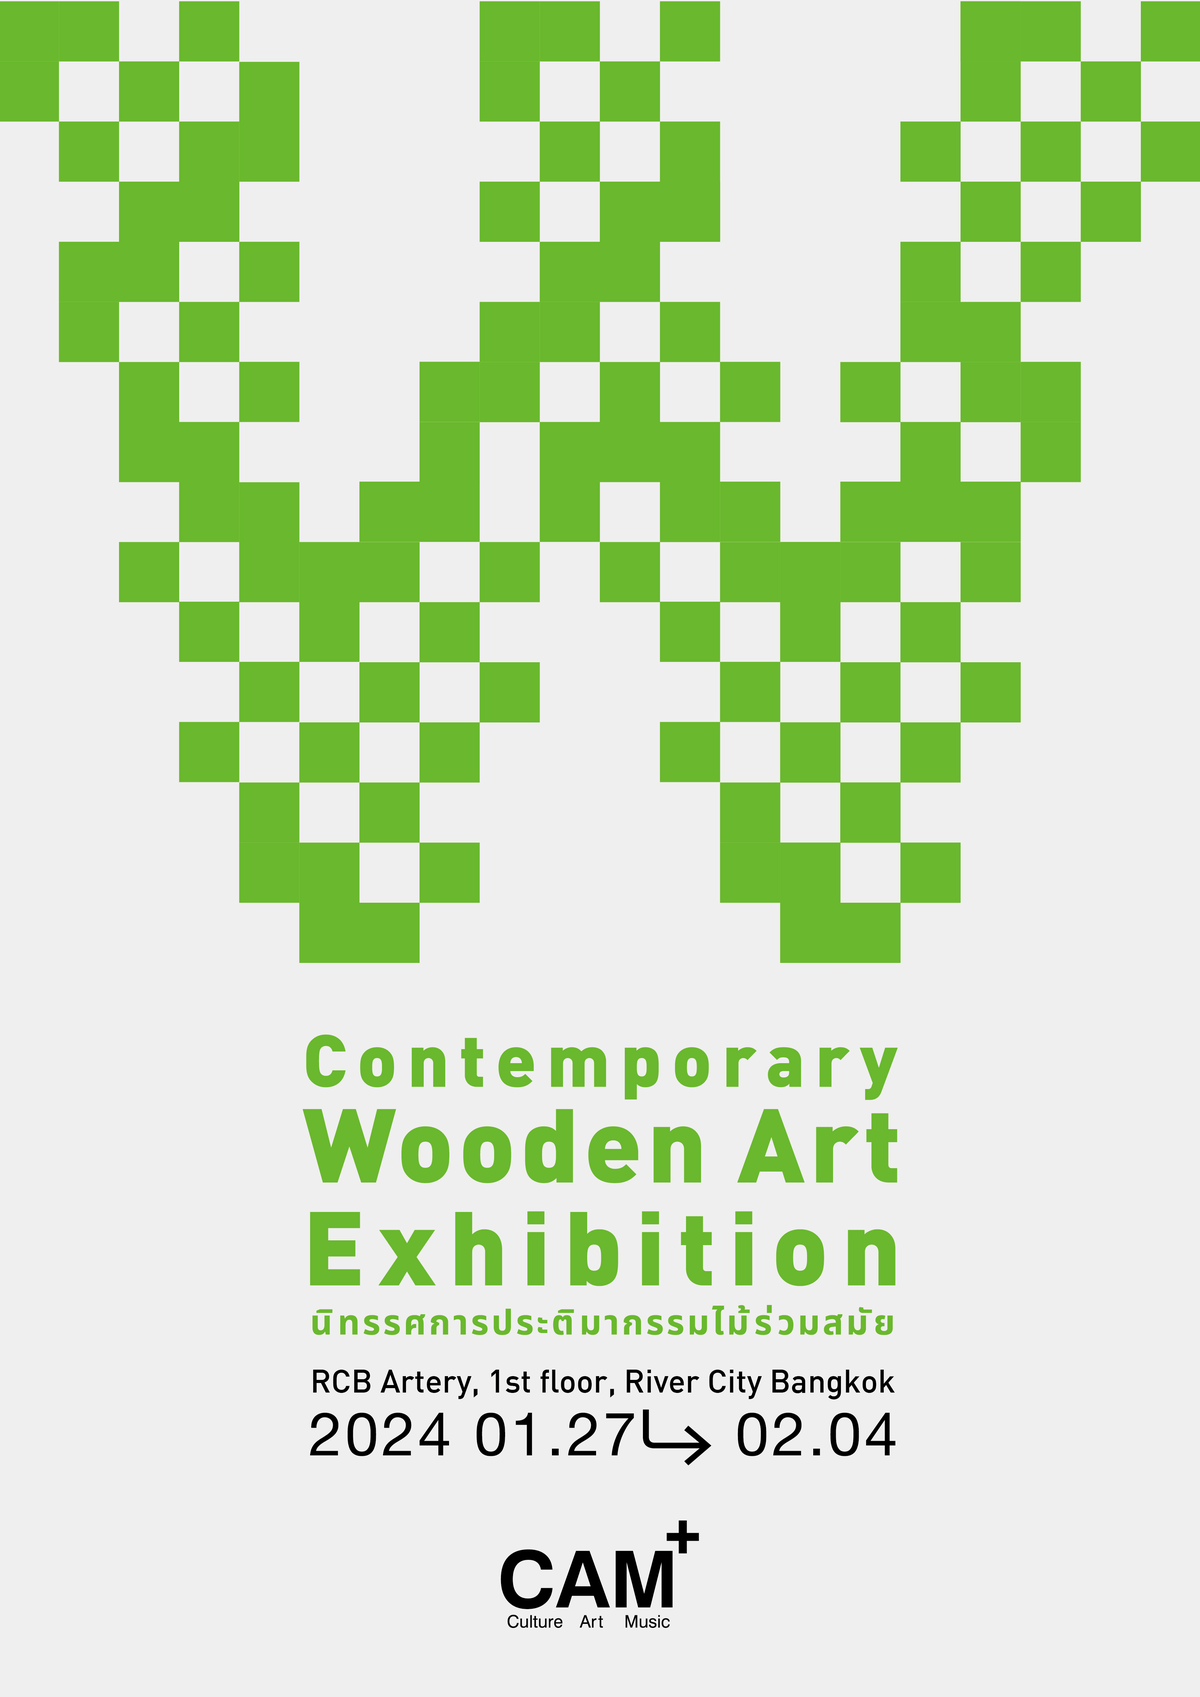 ไม้กลับมามีชีวิตอีกครั้งผ่านนิทรรศการประติมากรรมไม้ร่วมสมัย 'Contemporary Wooden Art Exhibition' ณ ริเวอร์ ซิตี้ แบงค็อก